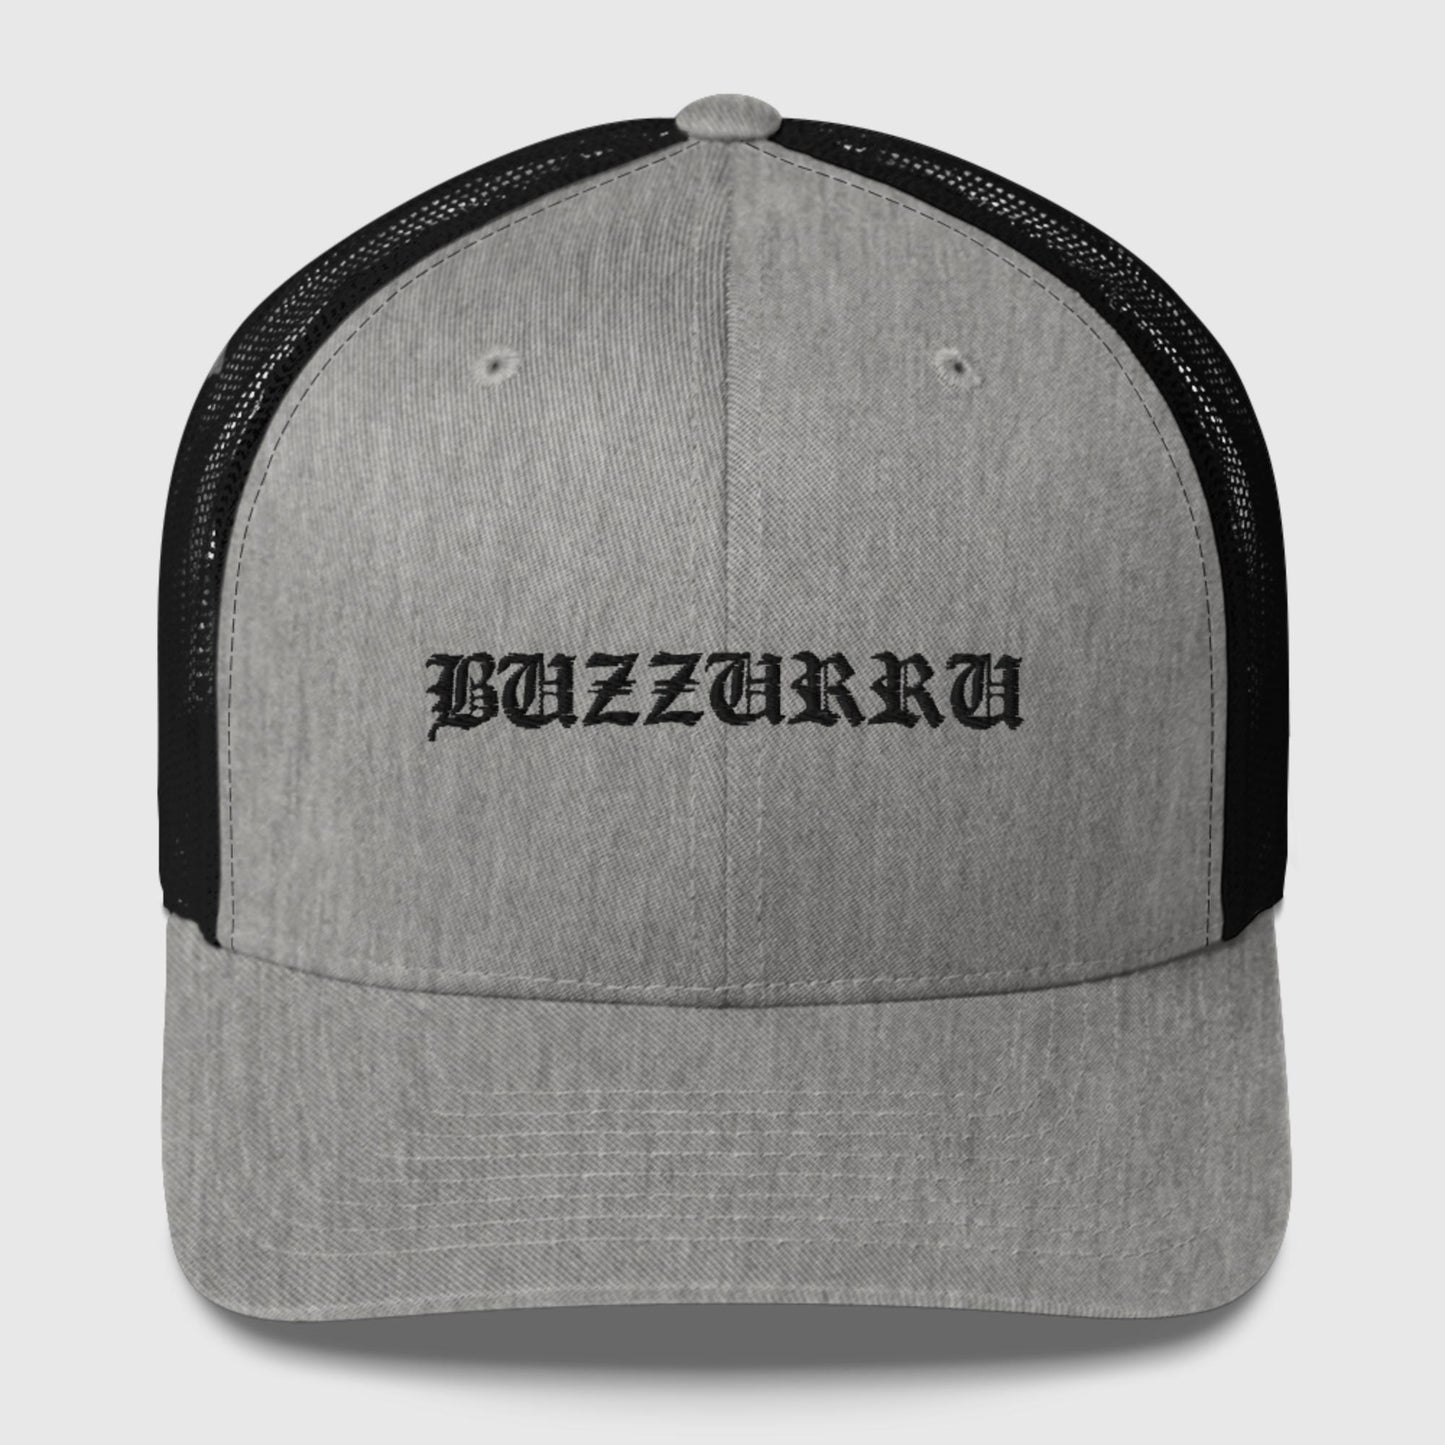 Buzzurru Trucker Hat III Trucker Cap